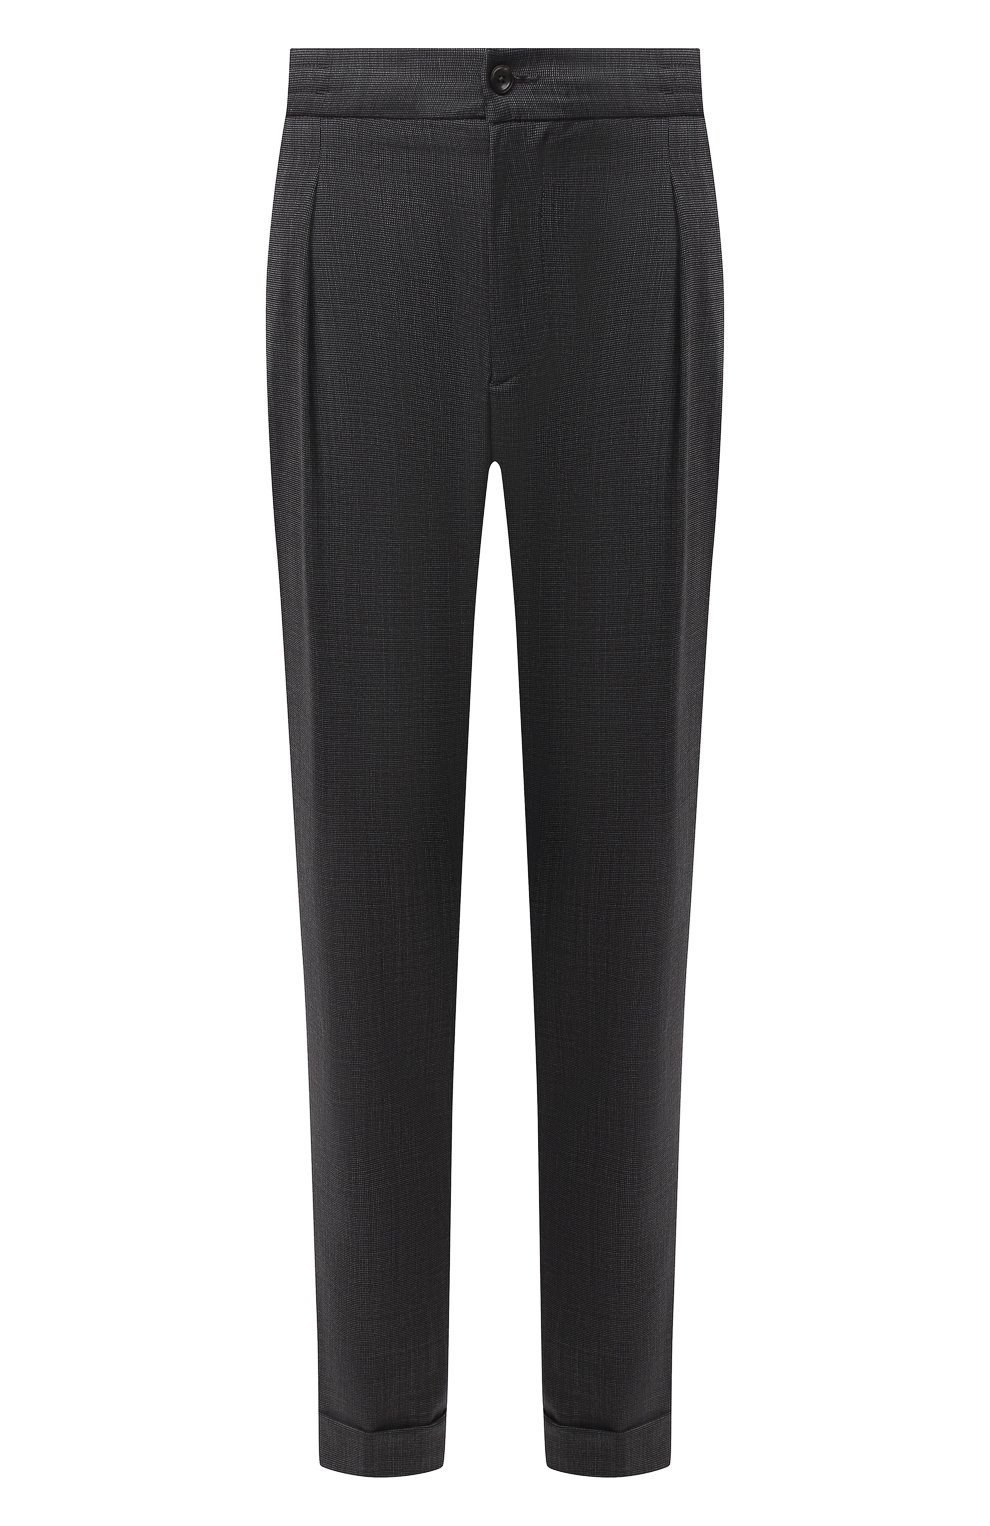 Мужские шерстяные брюки MARCO PESCAROLO темно-серого цвета, арт. CHIAIA/4231 | Фото 1 (Материал внешний: Шерсть; Длина (брюки, джинсы): Стандартные; Стили: Классический; Случай: Формальный)